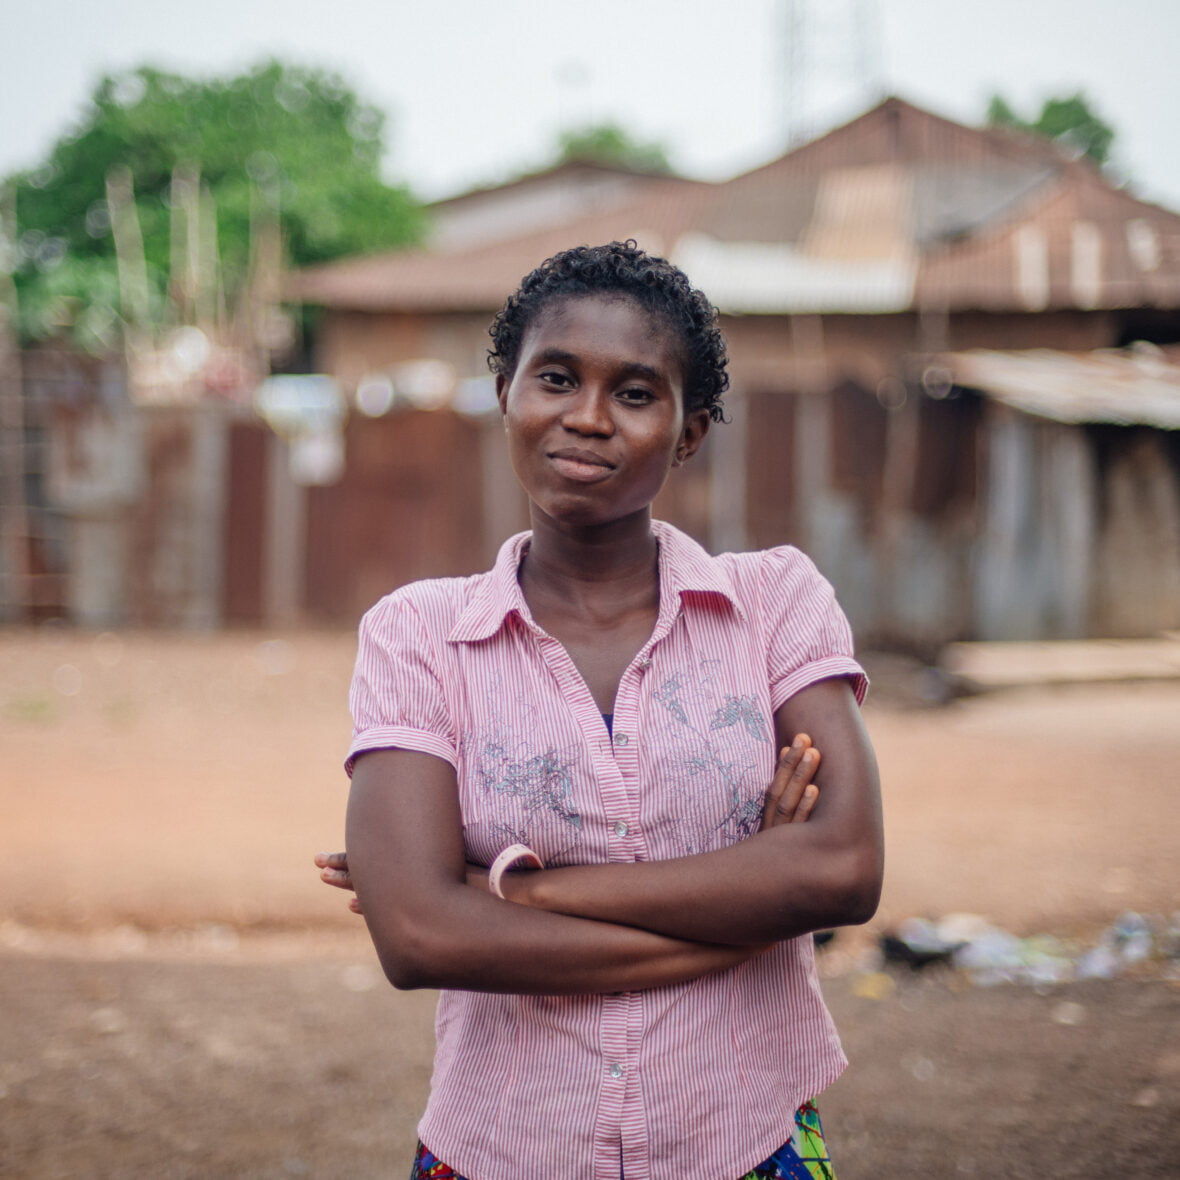 Sierraleonelainen tyttö seisoo kotikylänsä edessä ja katsoo kameraan, hän on ristinyt kädet eteensä.